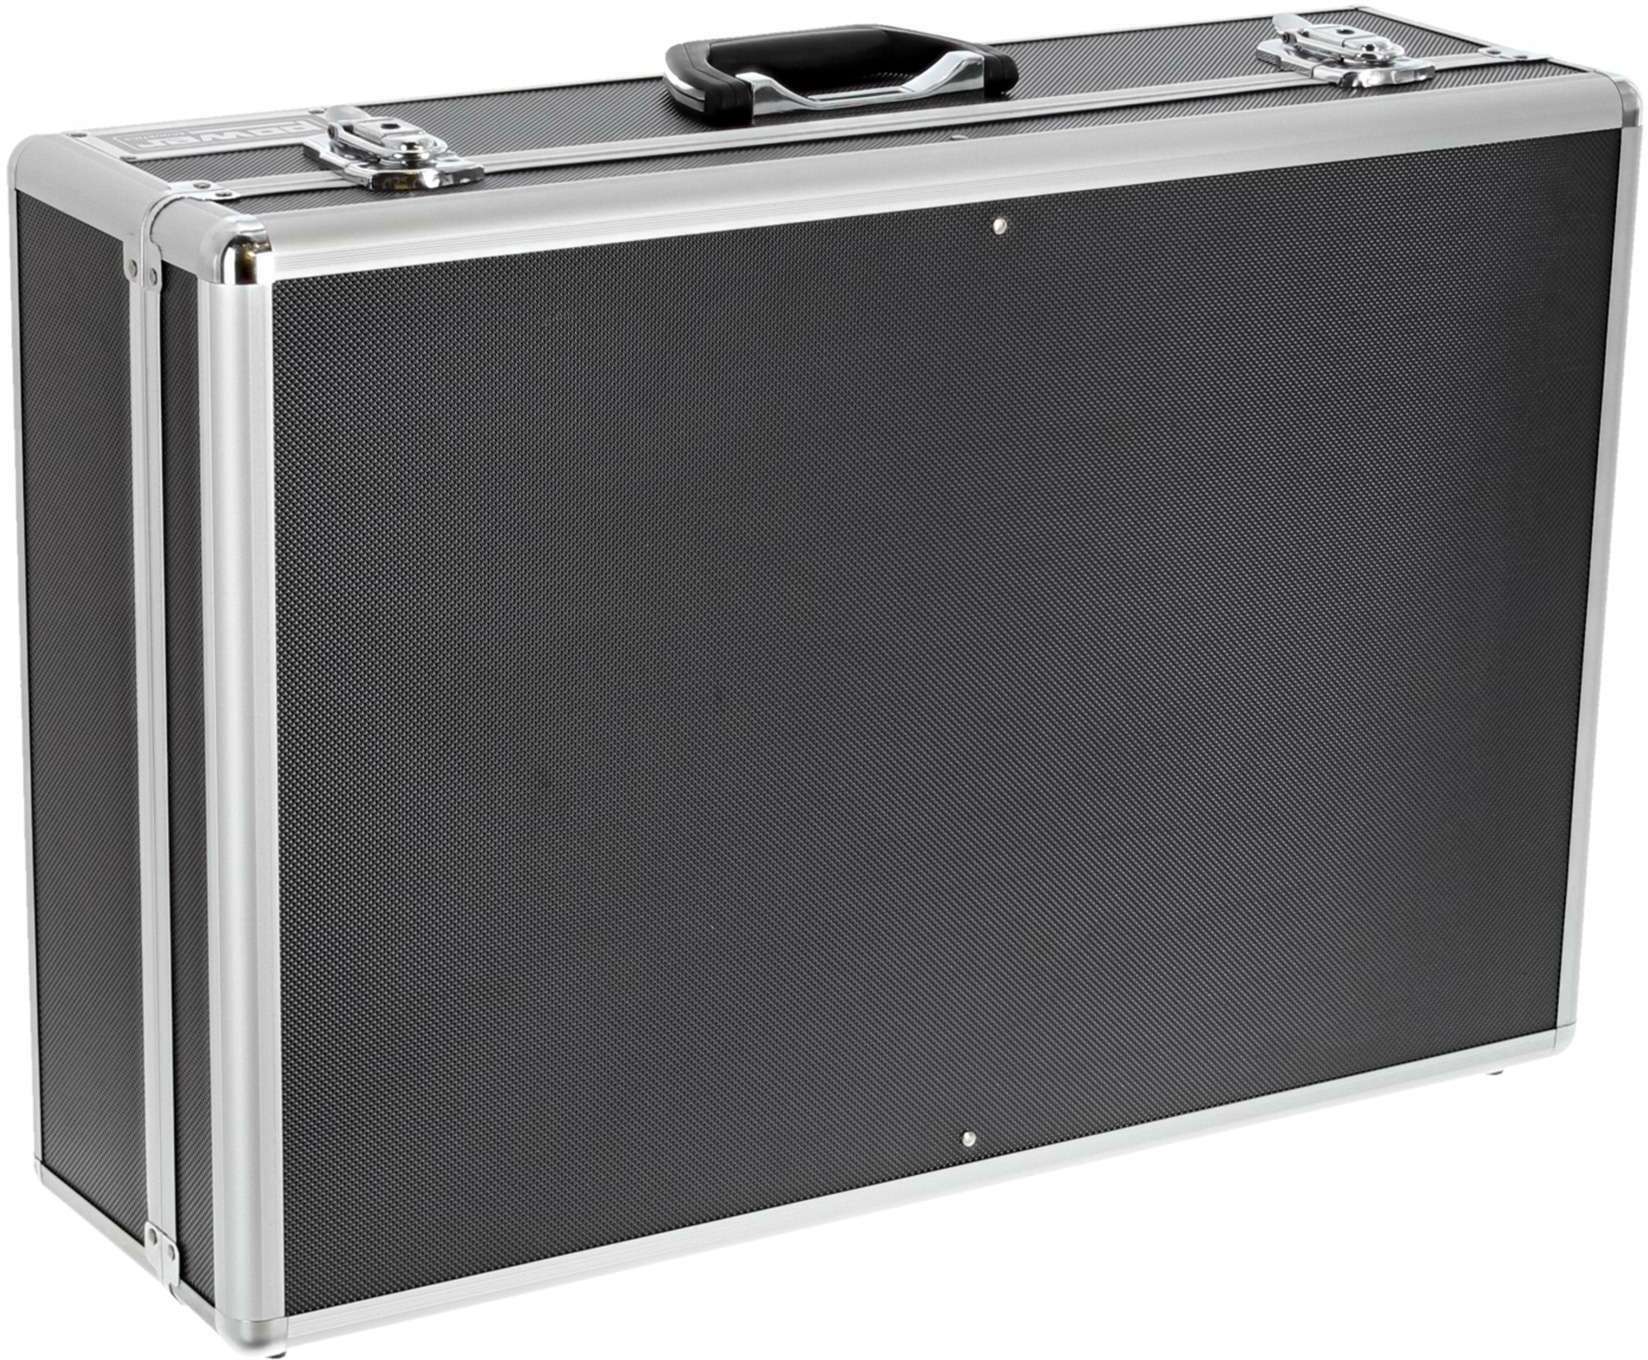 Power Acoustics Fl Mixer 4 Valise De Transport Pour Mixeur - Cajas de mezcladores - Main picture